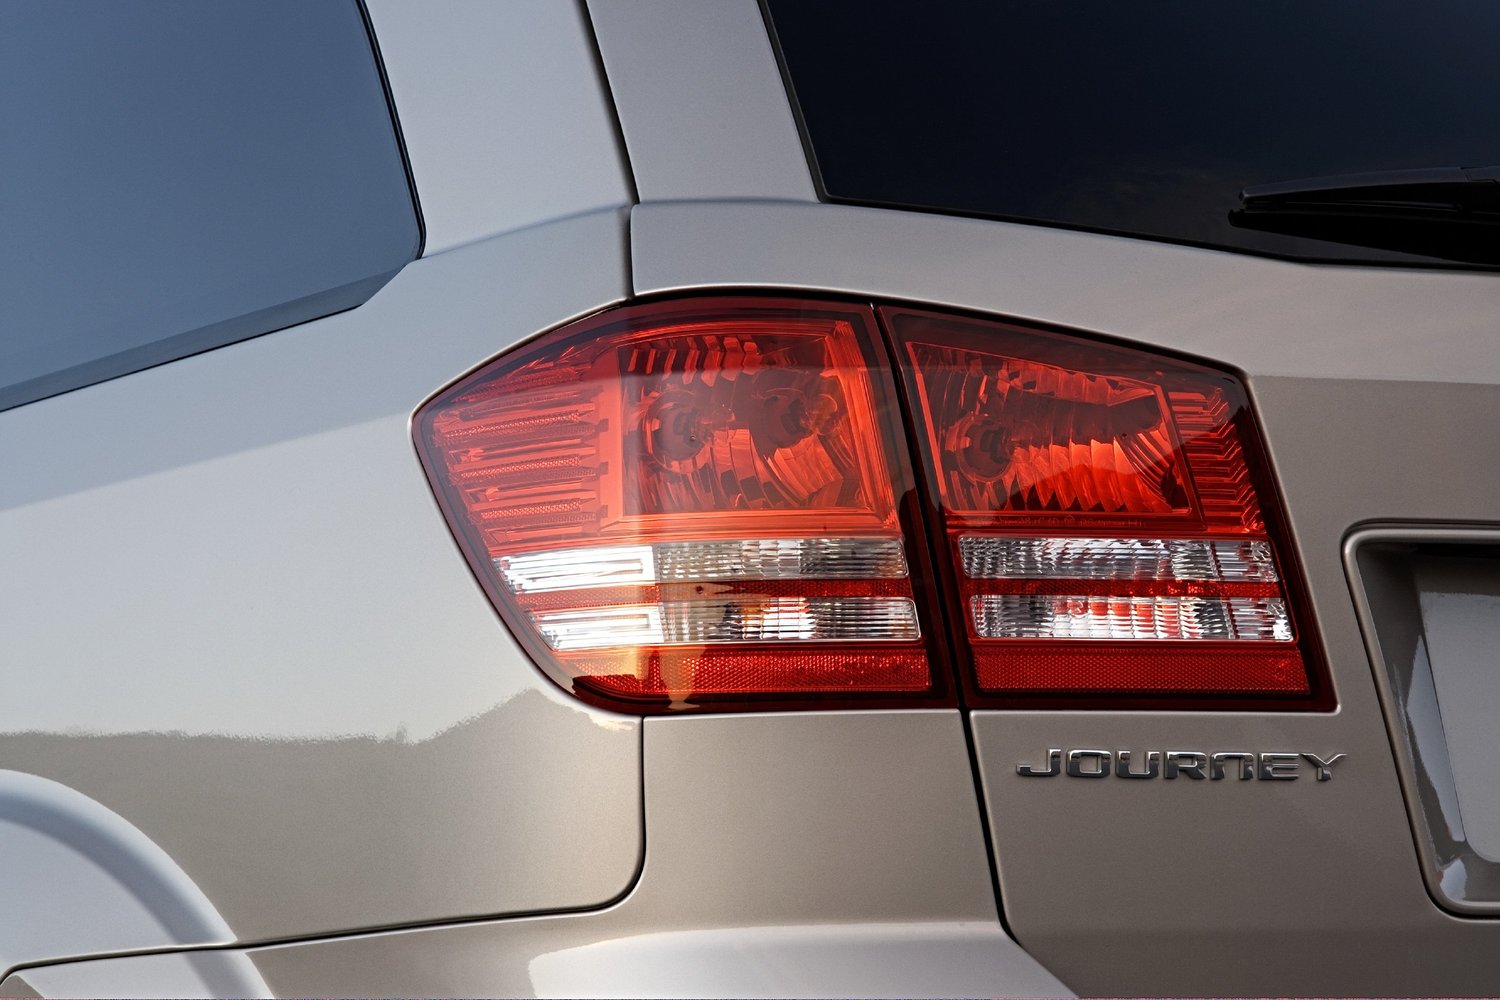 кроссовер Dodge Journey 2008 - 2016г выпуска модификация 2.0 MT (140 л.с.)